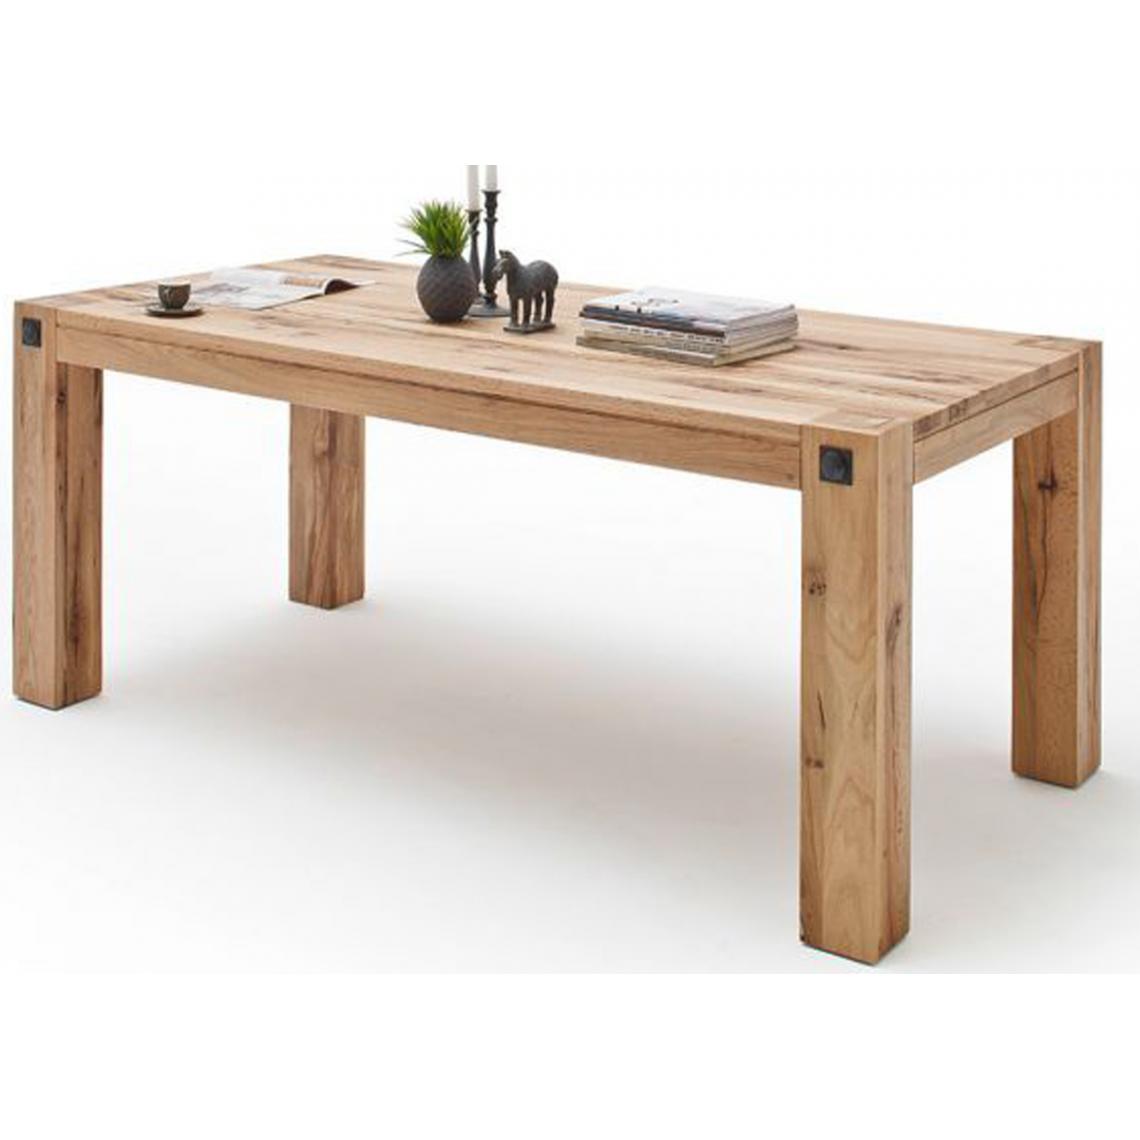 Pegane - Table à manger en chêne sauvage laqué mat massif - L.220 x H.76 x P.100 cm - Tables à manger